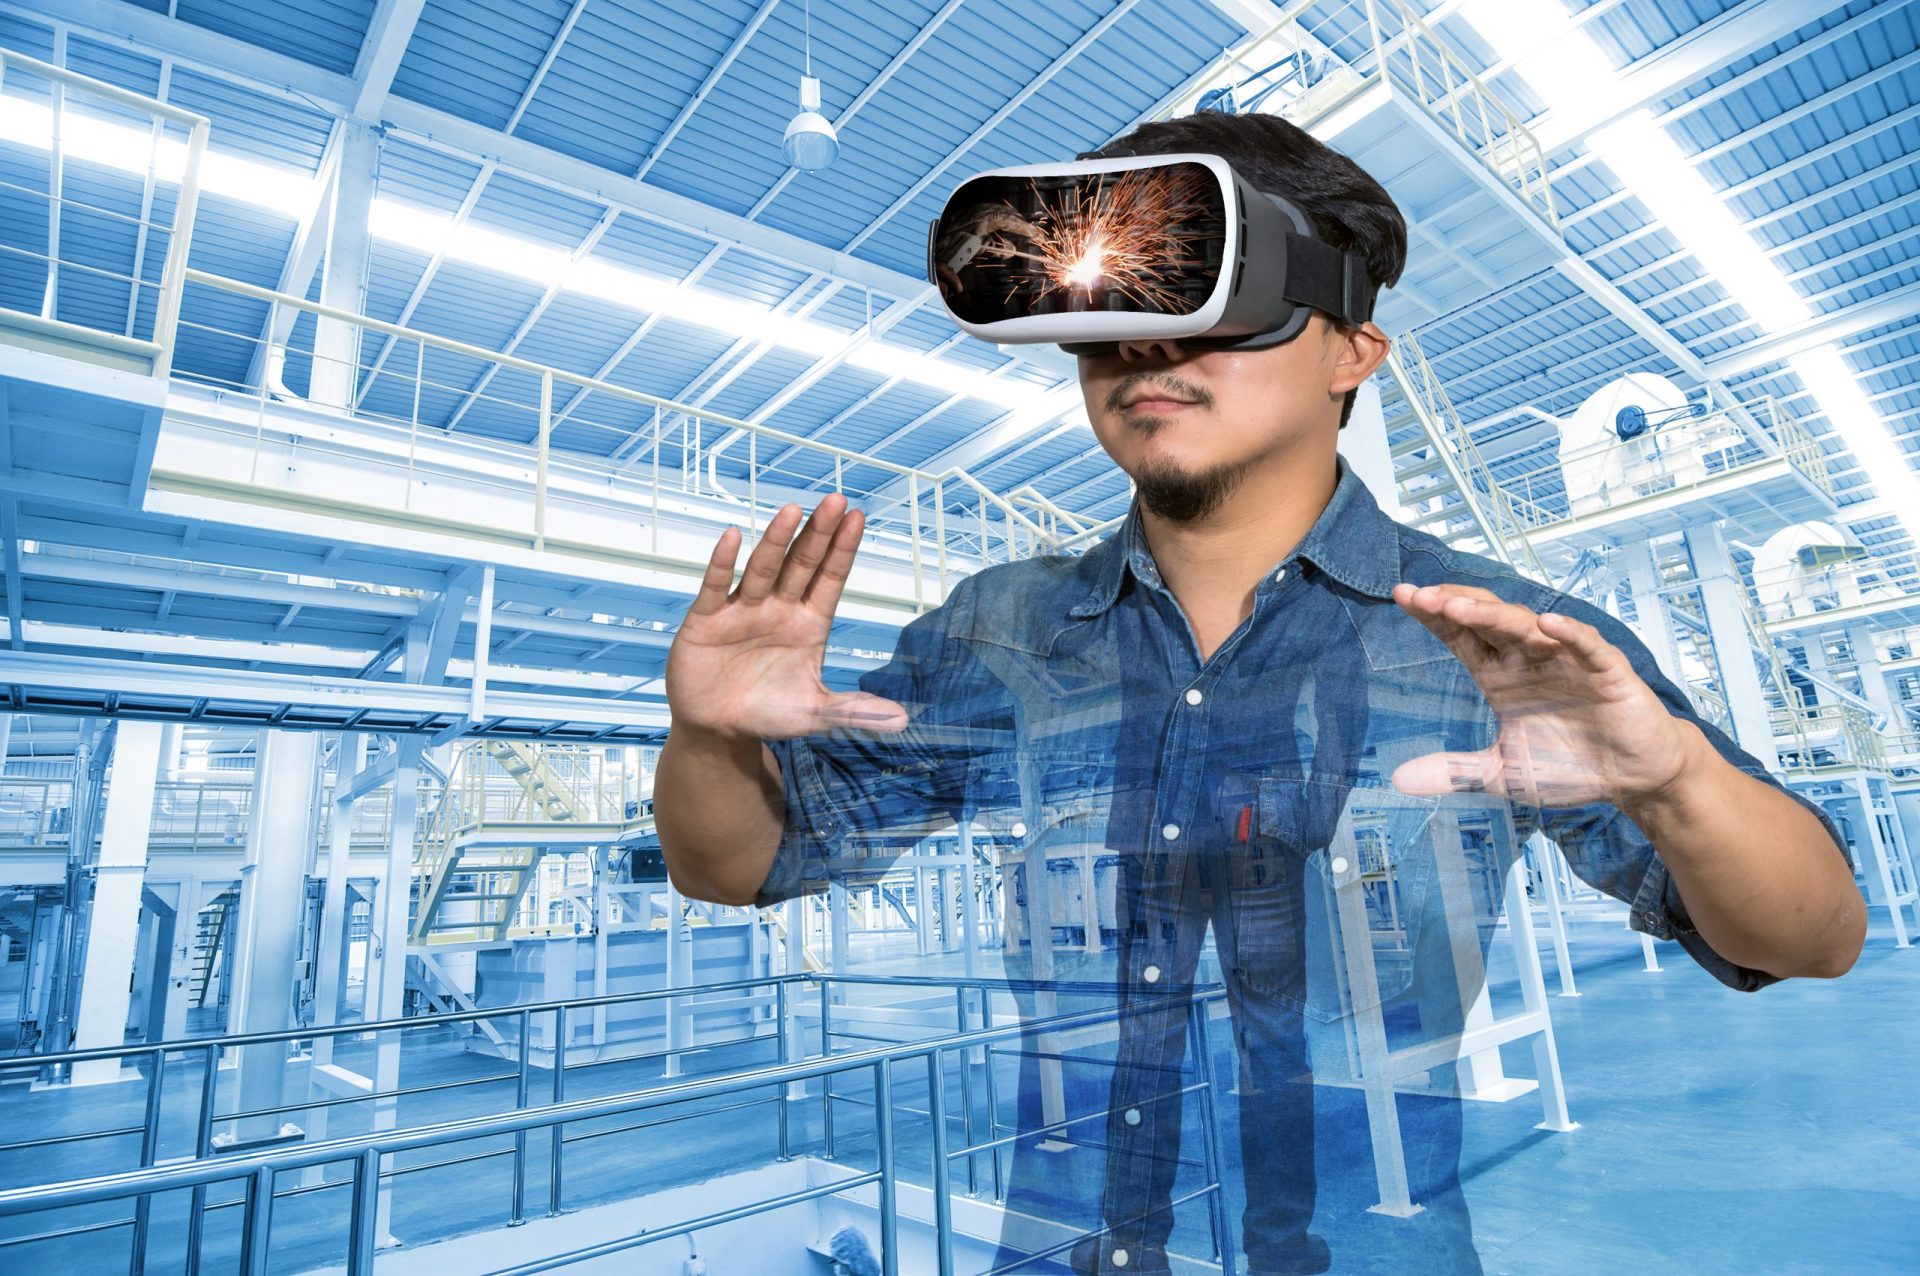 Doppelbelichtung eines asiatischen Mannes, der eine Virtual-Reality-Brille trägt, über der Fabrikausrüstung innerhalb einer industriellen Förderbandlinie, die Pakete transportiert. VR-Konzept.